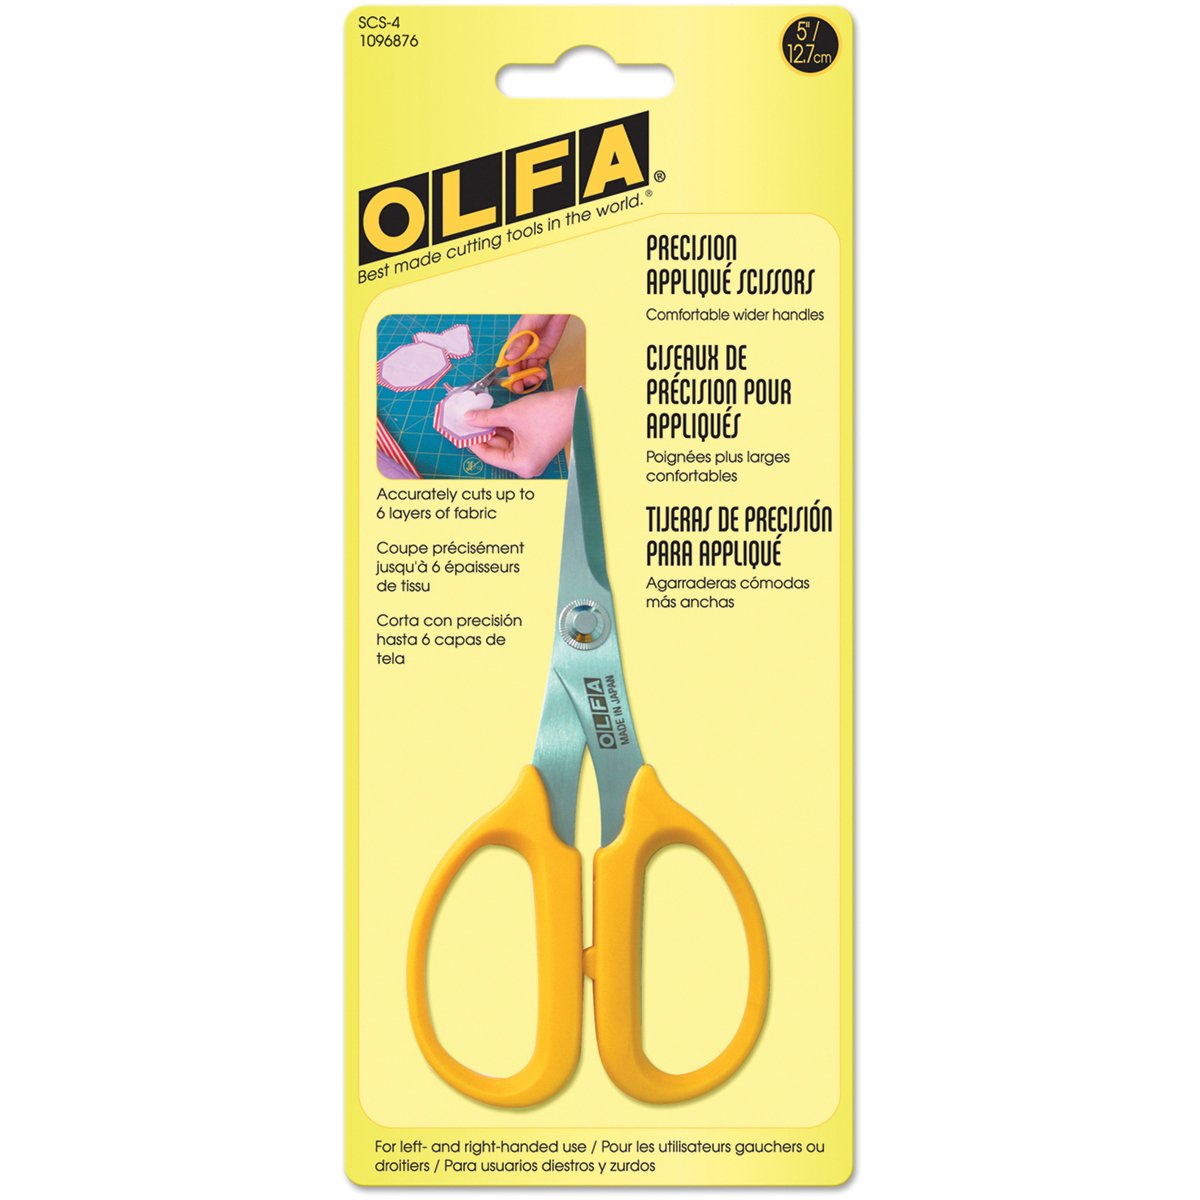 Olfa Precision Applique Scissors - Symmetrical design for ease of handling